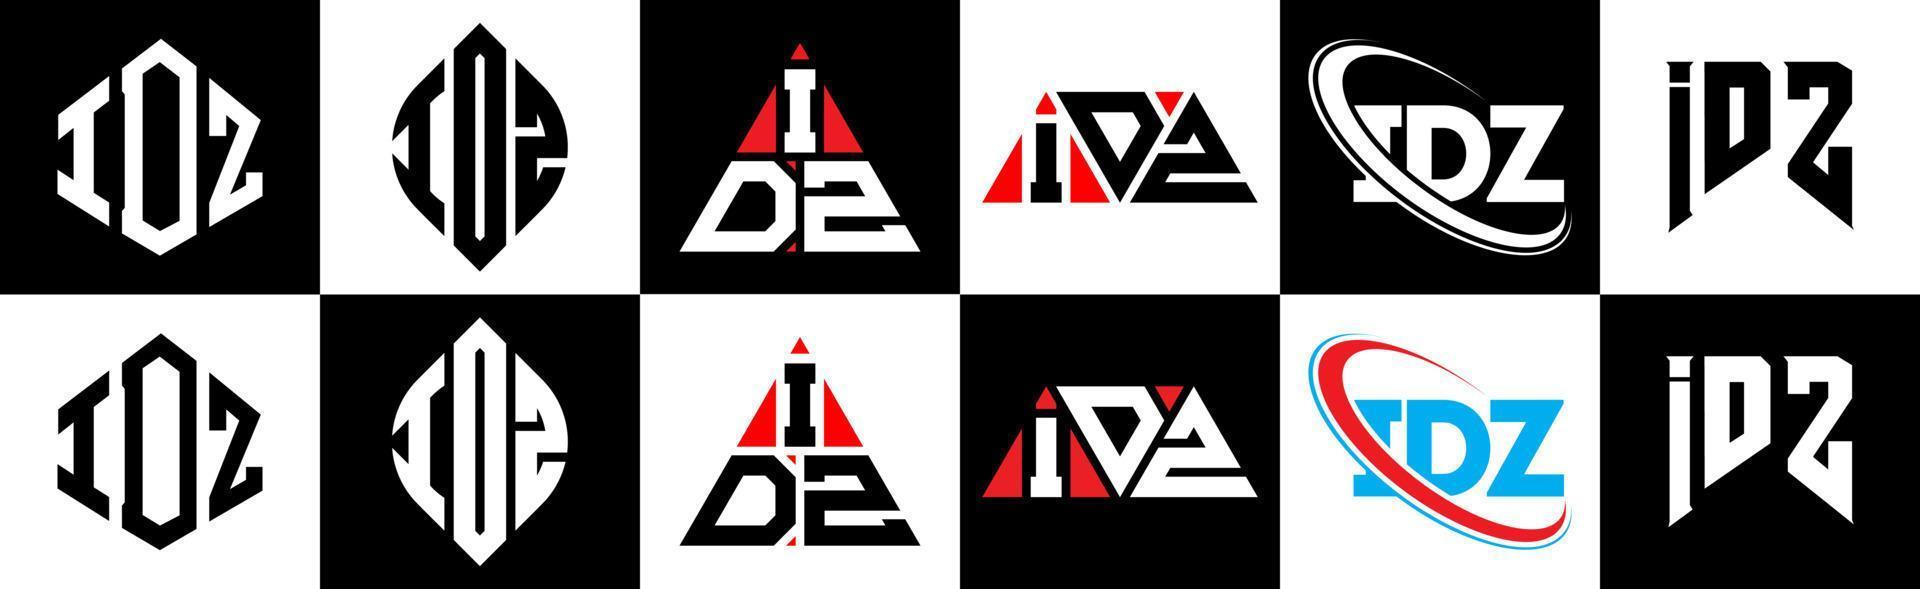 idz-Buchstaben-Logo-Design in sechs Stilen. idz polygon, kreis, dreieck, hexagon, flacher und einfacher stil mit schwarz-weißem buchstabenlogo in einer zeichenfläche. Idz minimalistisches und klassisches Logo vektor